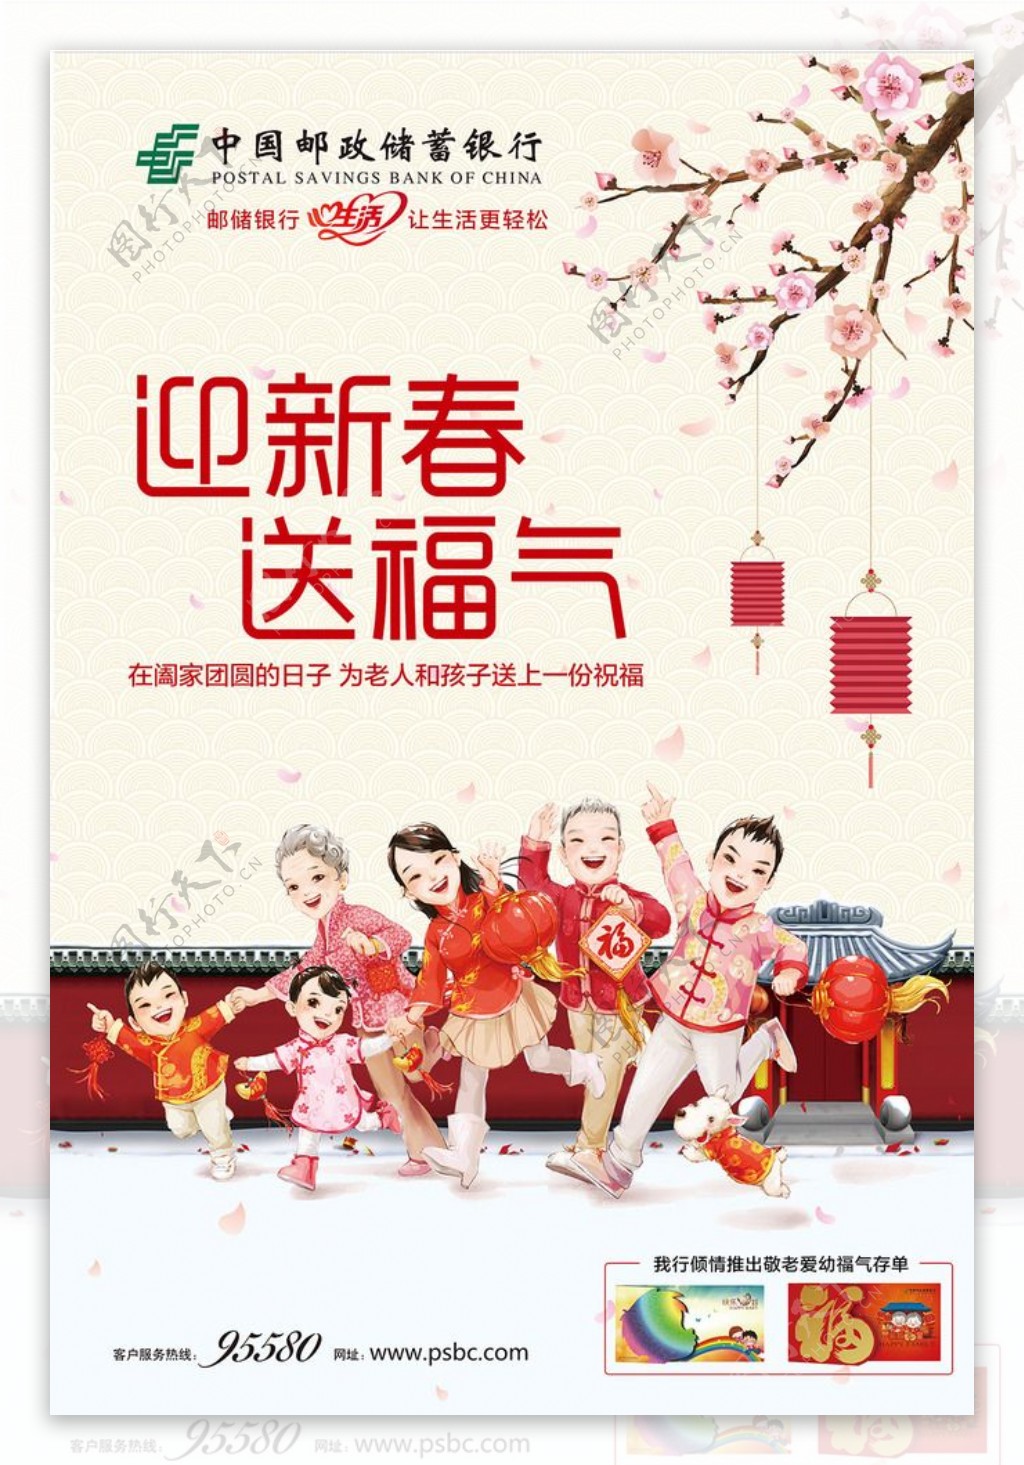 中国邮政储蓄银行迎新春